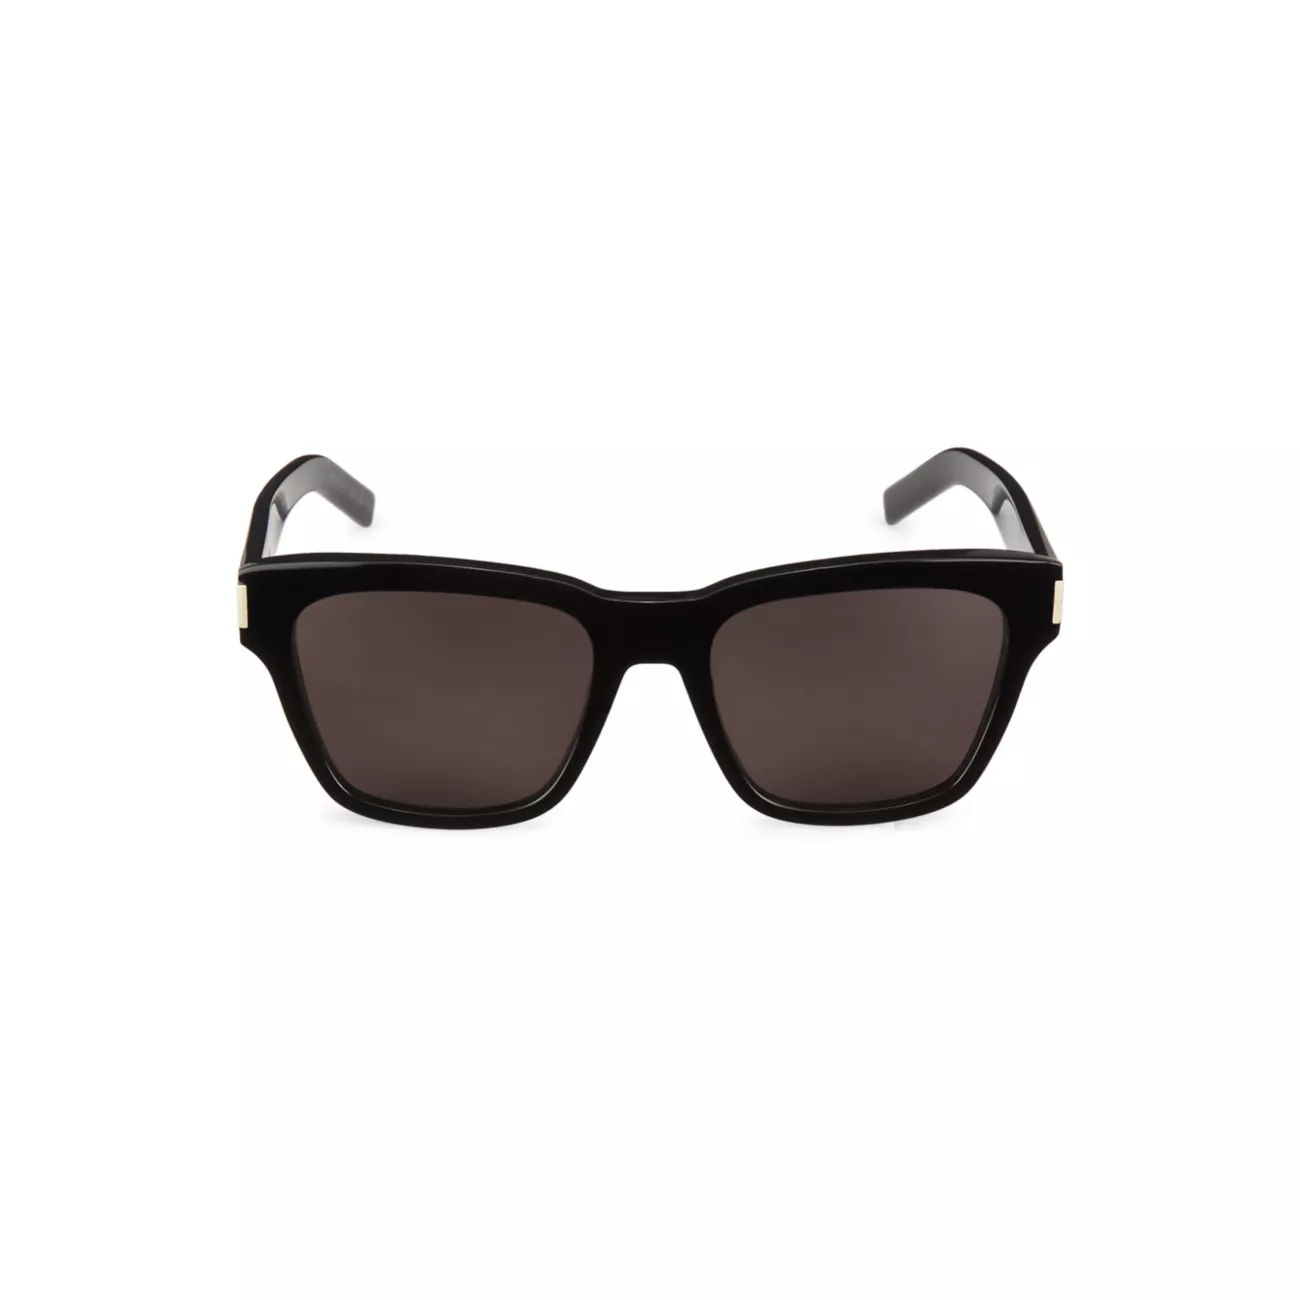 Прямоугольные солнцезащитные очки из ацетата New Wave 54 мм Saint Laurent